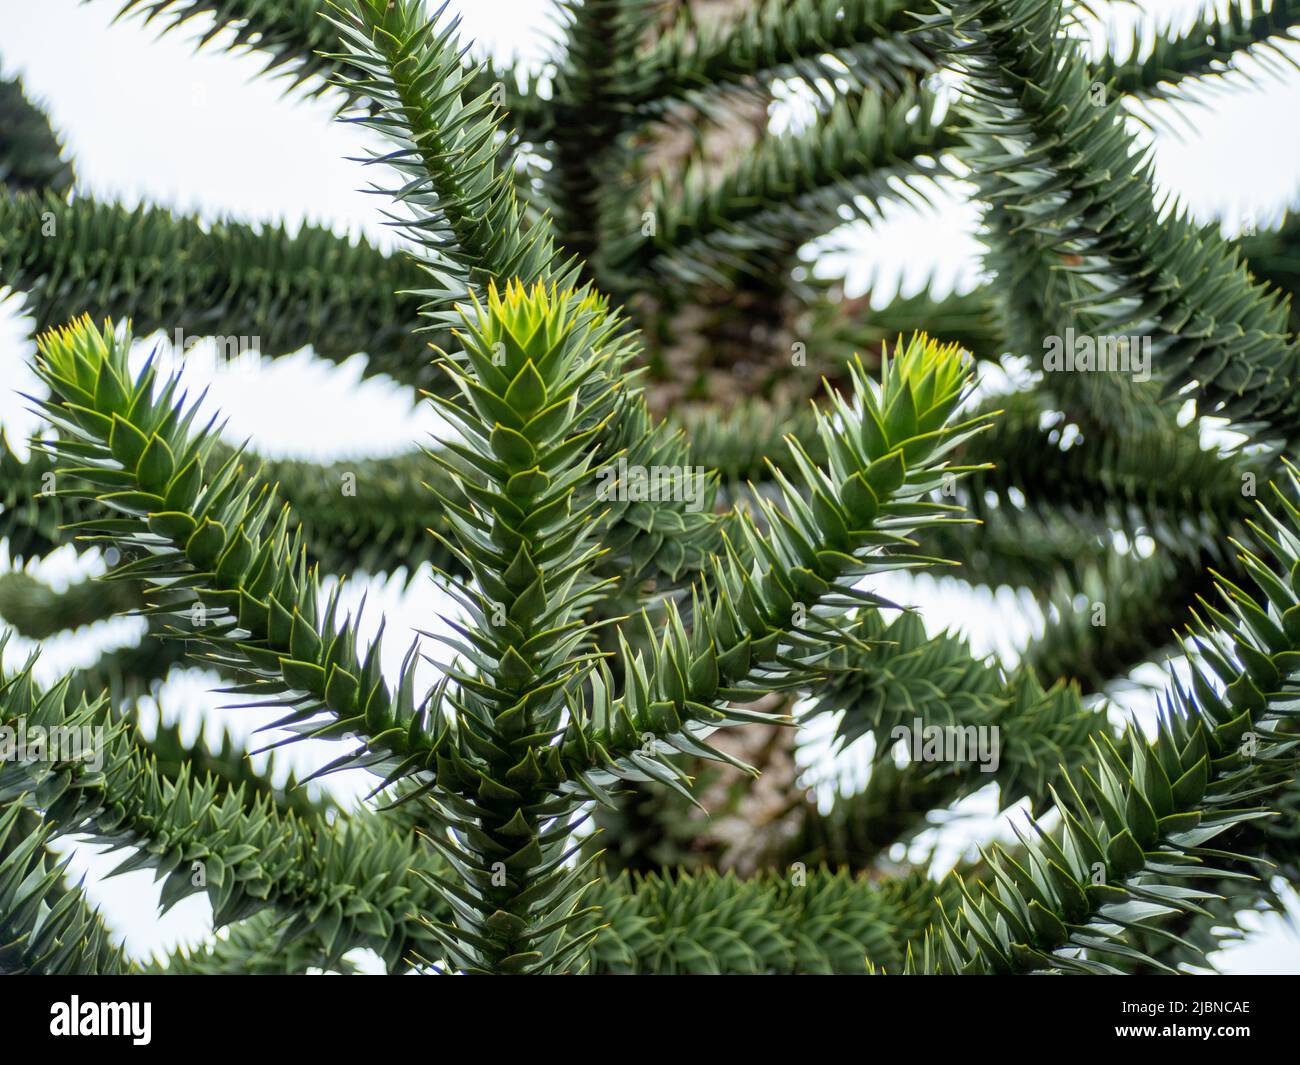 Araucaria chilena, también llamada Andenfir, Picea chilena, Snake Tree, Rock Spruce, Cola de mono, Picea ornamental chilena, o Puzzle Monkey Tree. Foto de stock